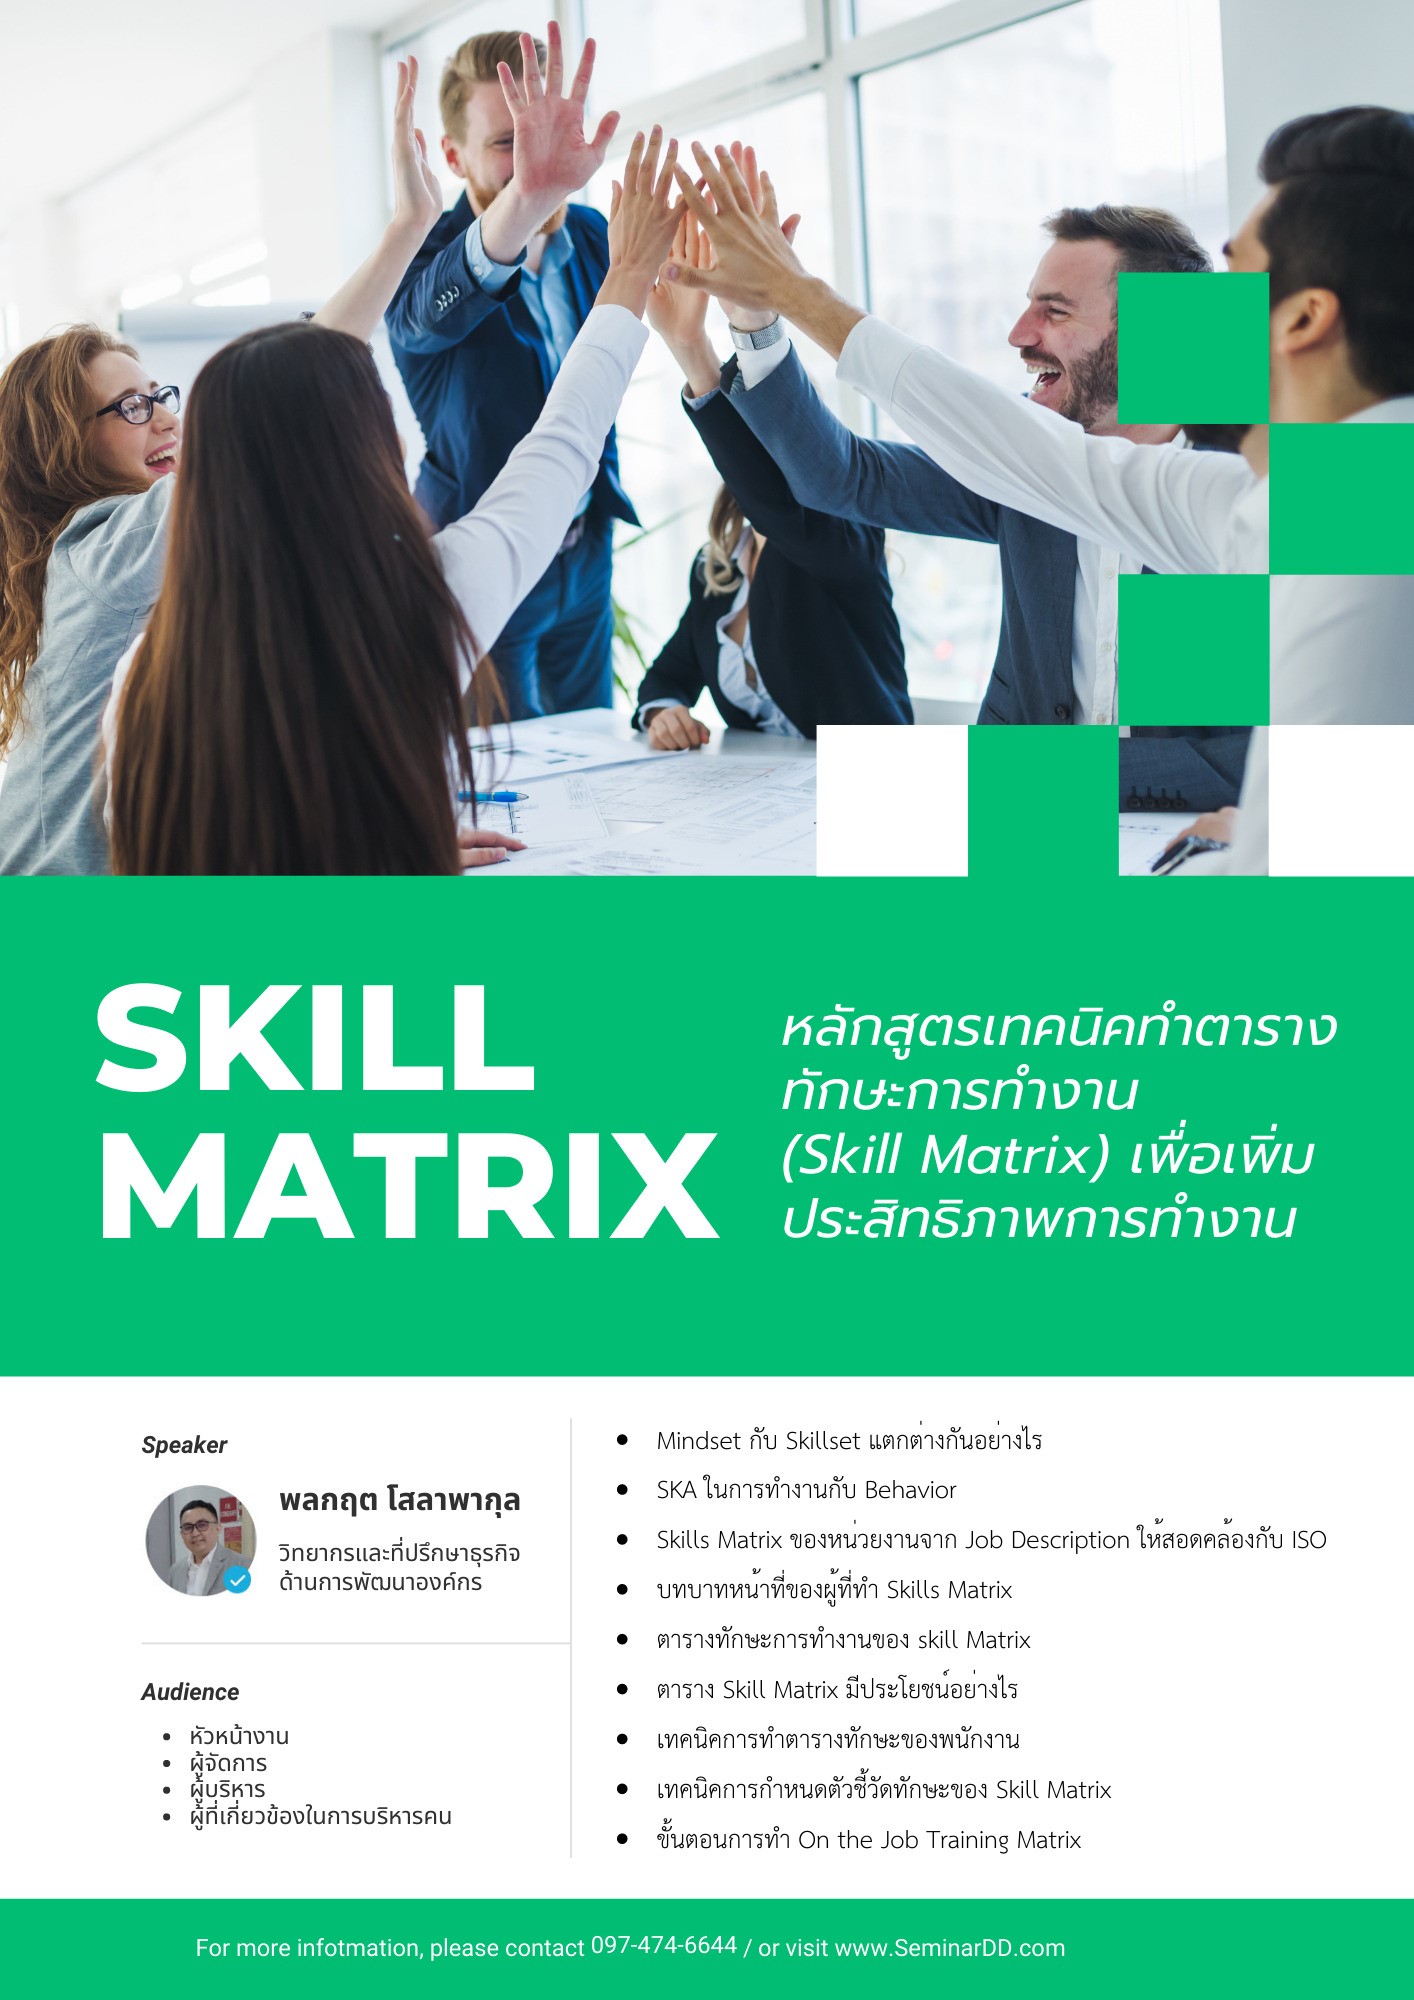 หลักสูตรอบรม เทคนิคทำตารางทักษะการทำงาน (Skill Matrix) เพื่อเพิ่มประสิทธิภาพการทำงาน